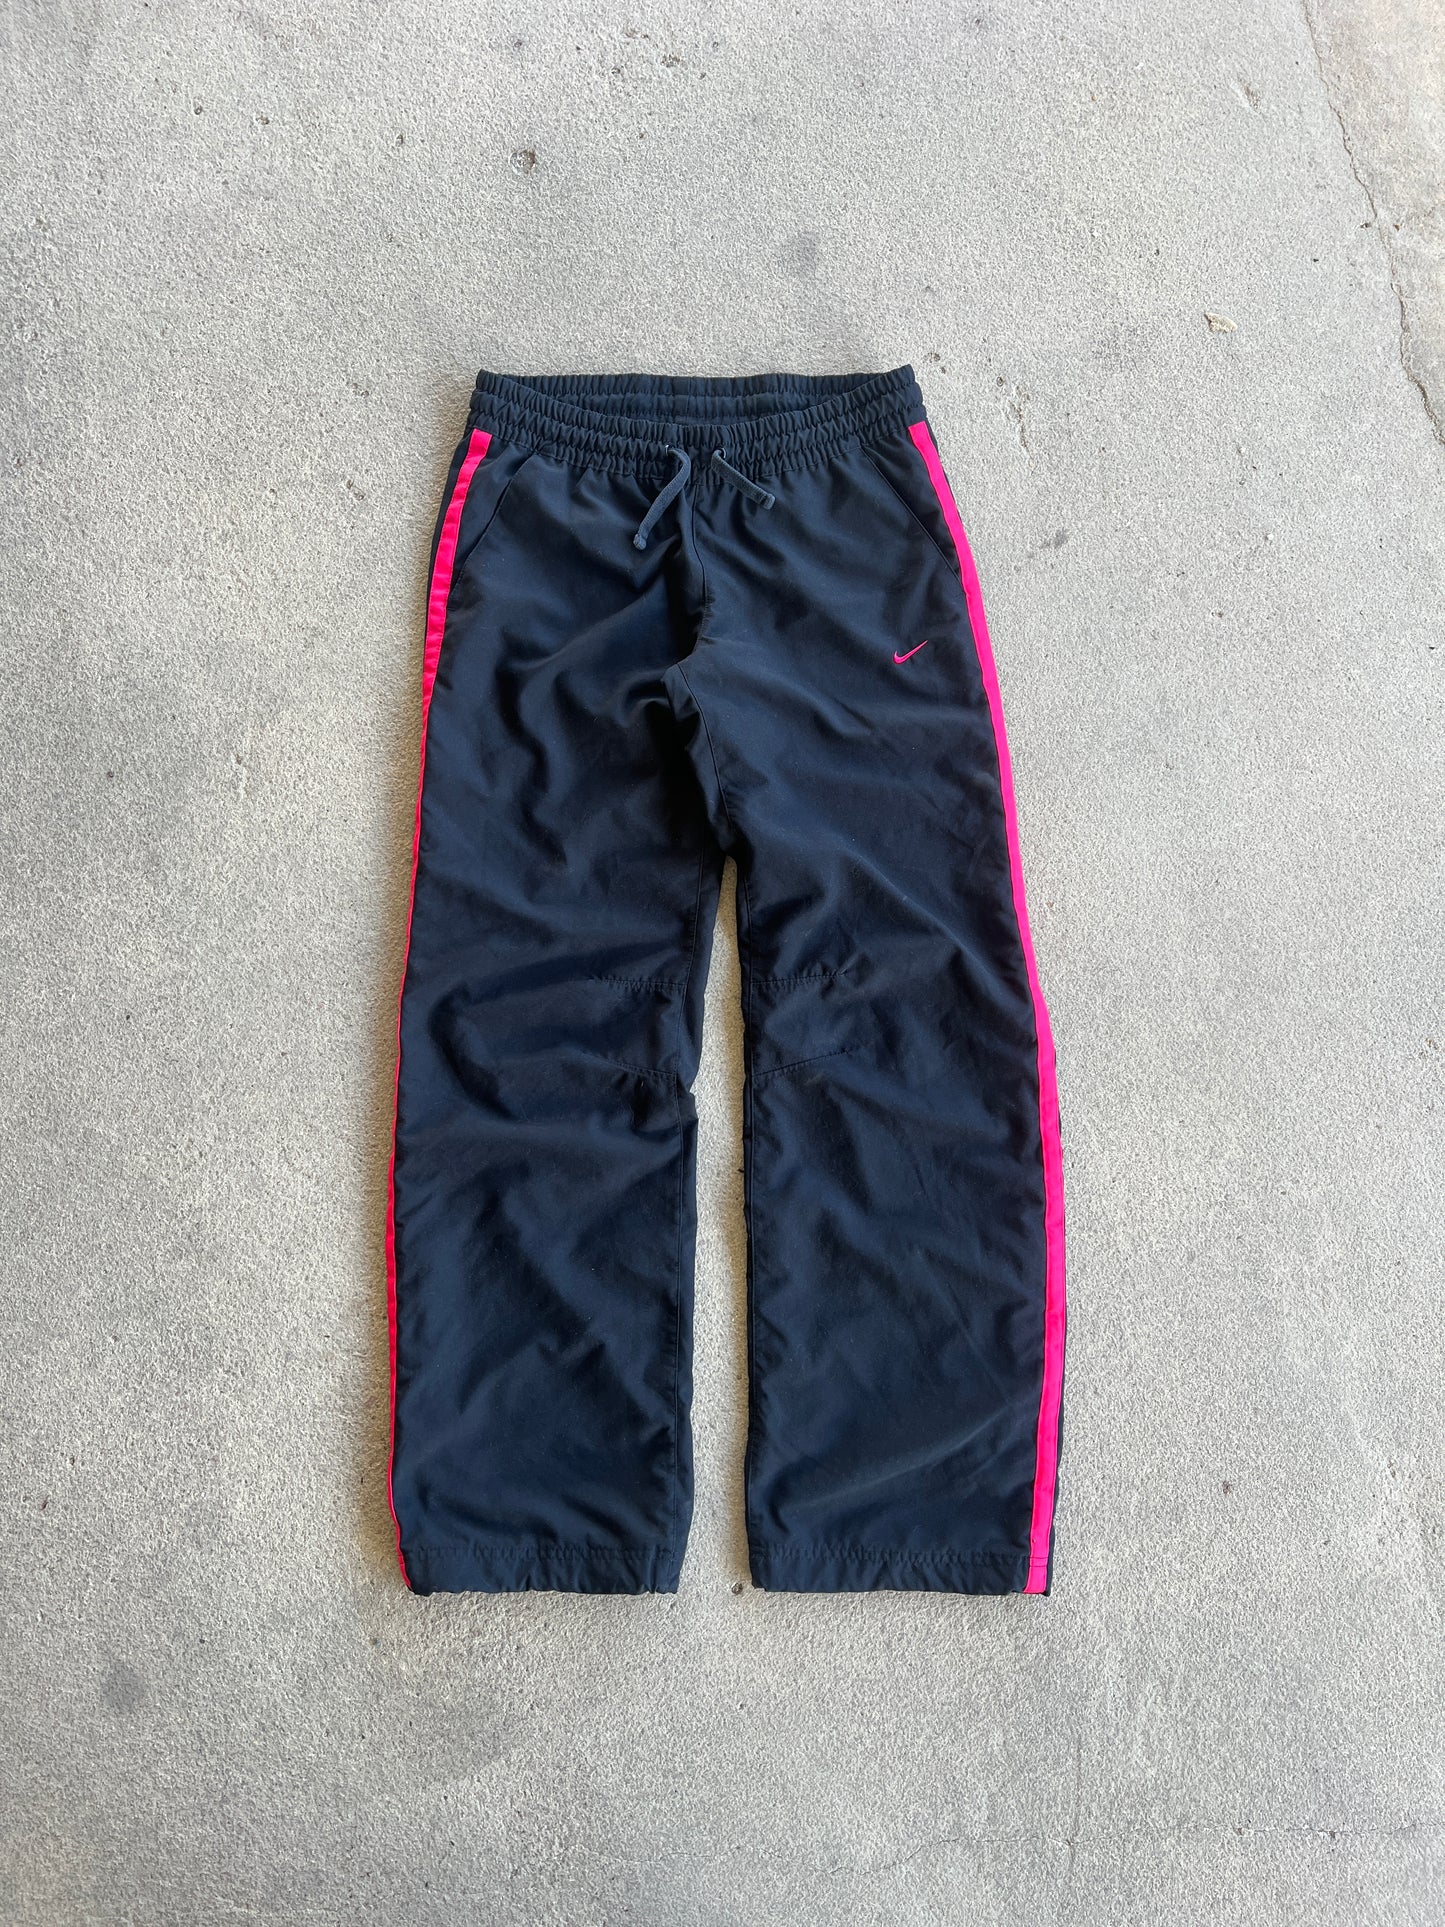 Vintage Pink Nike Track Pants - S